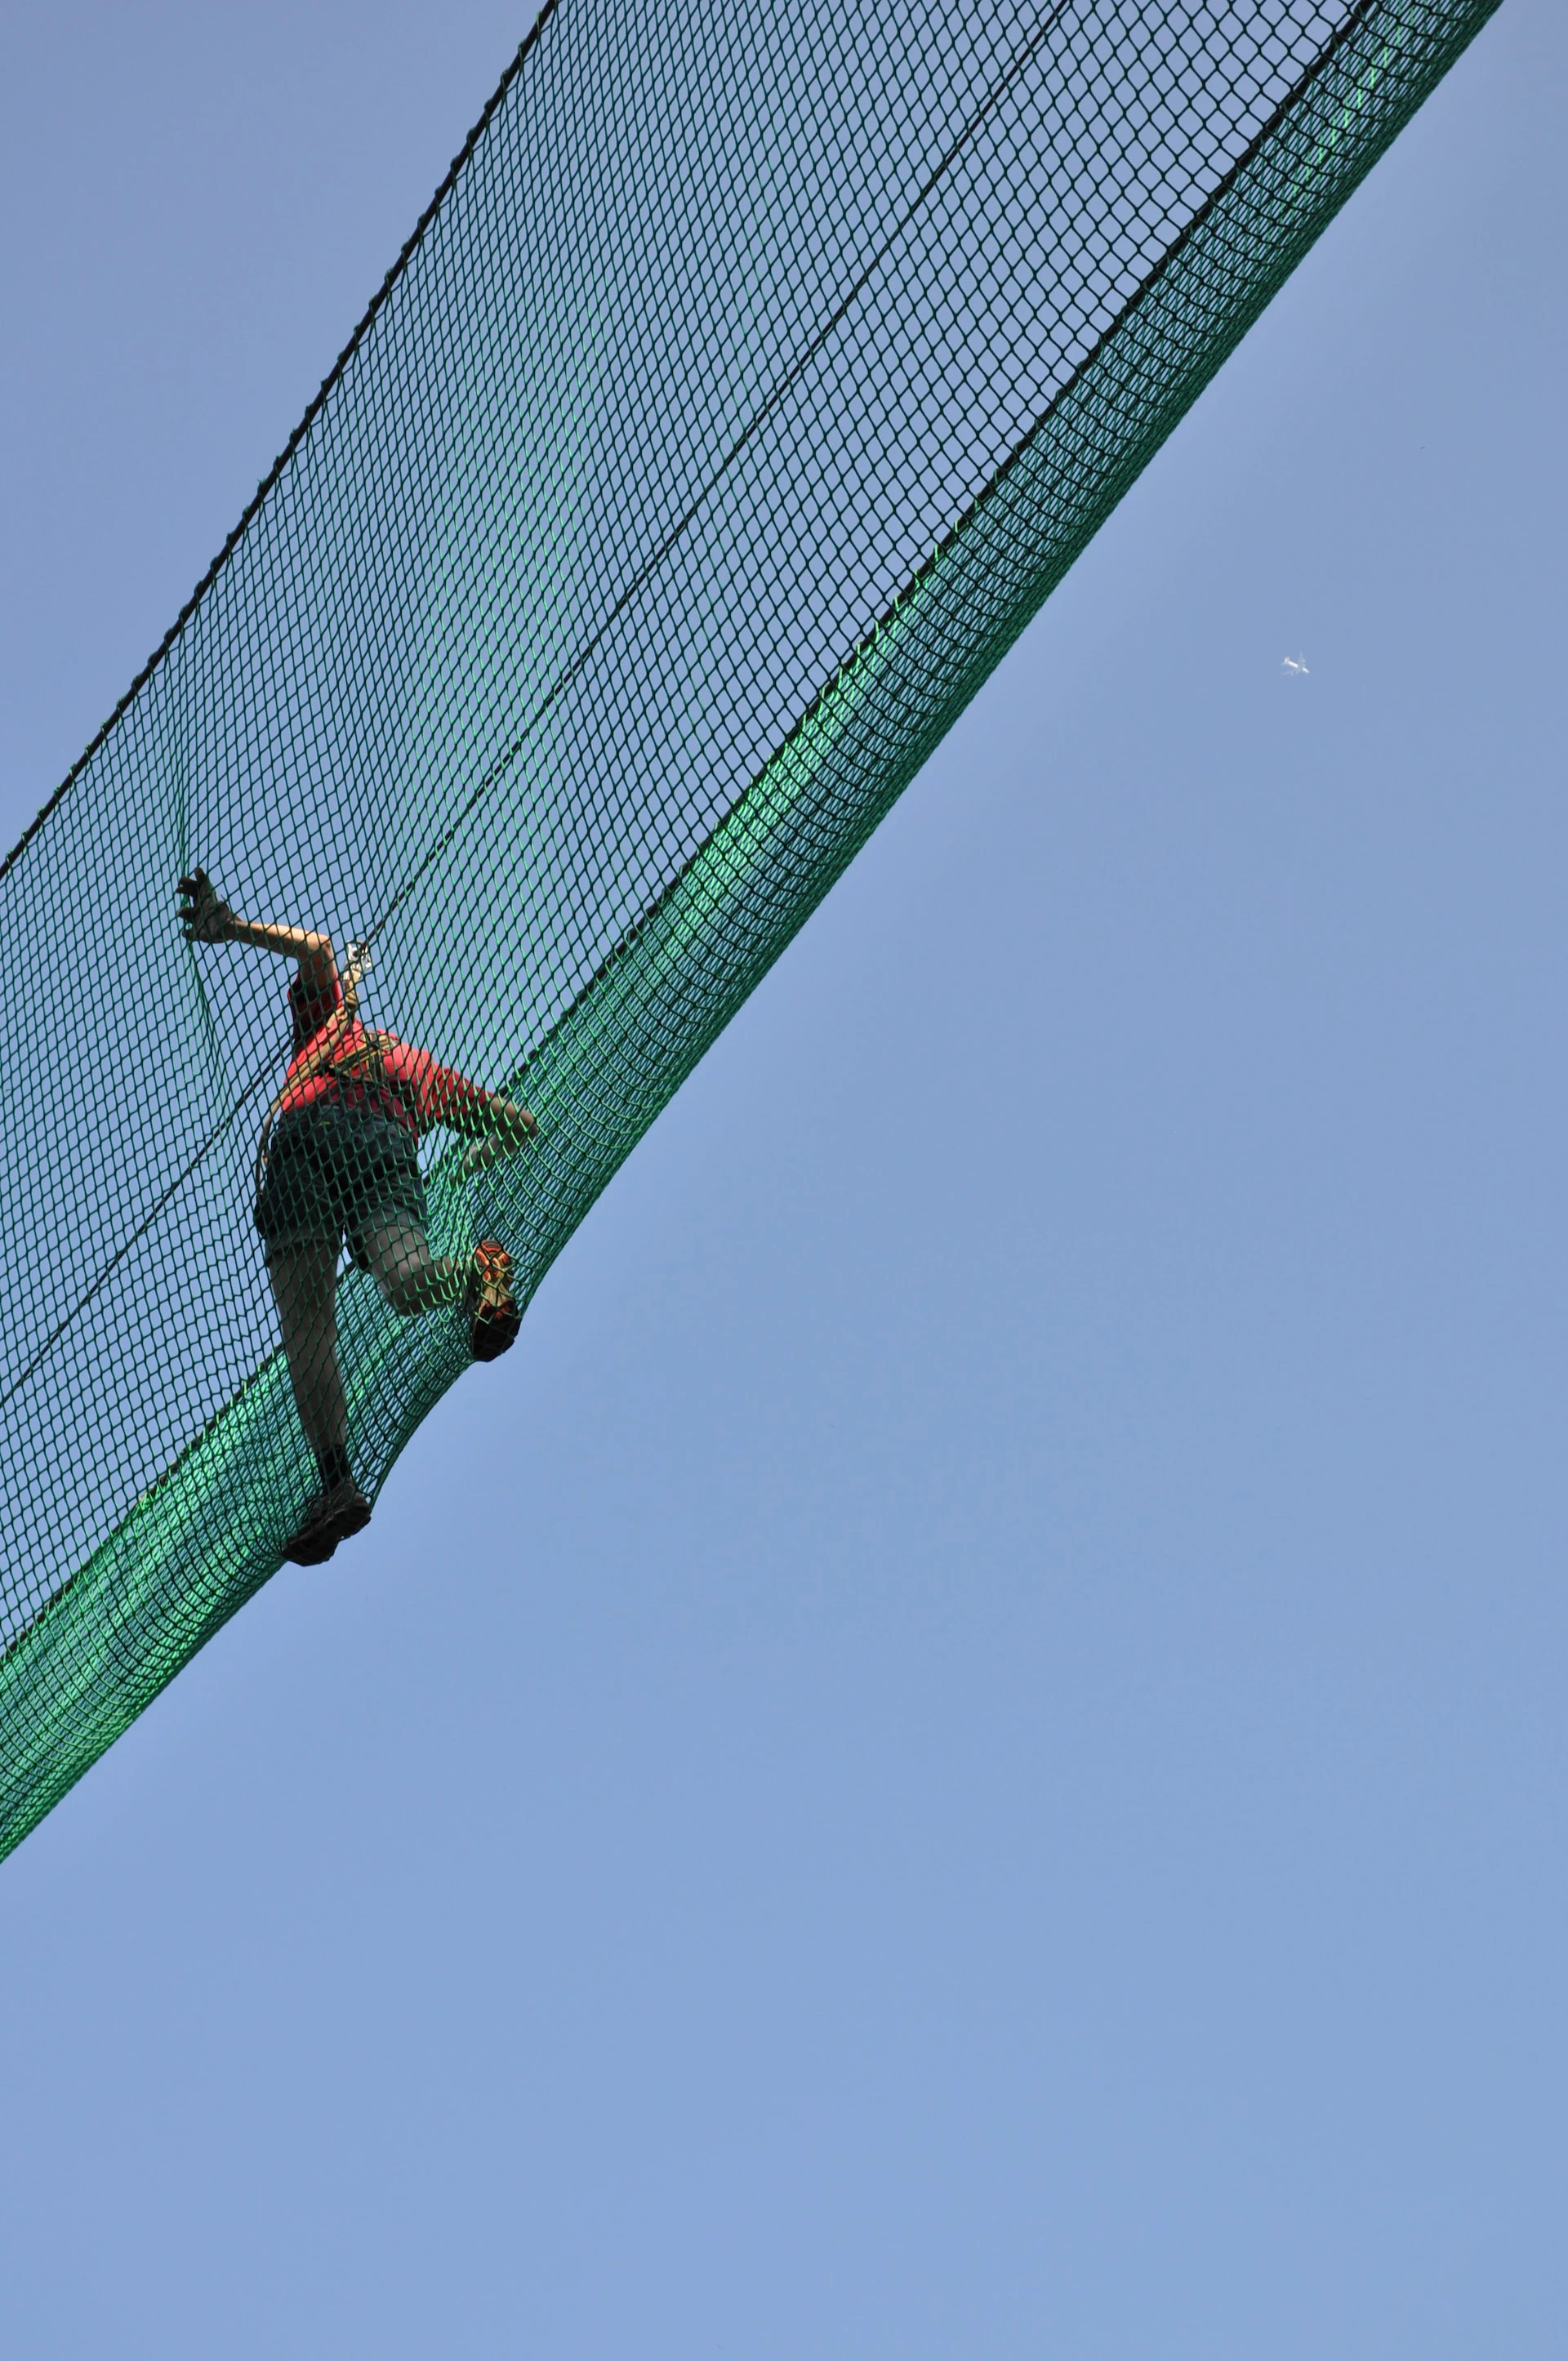 woman in red shirt walking across green safety net under open blue sky